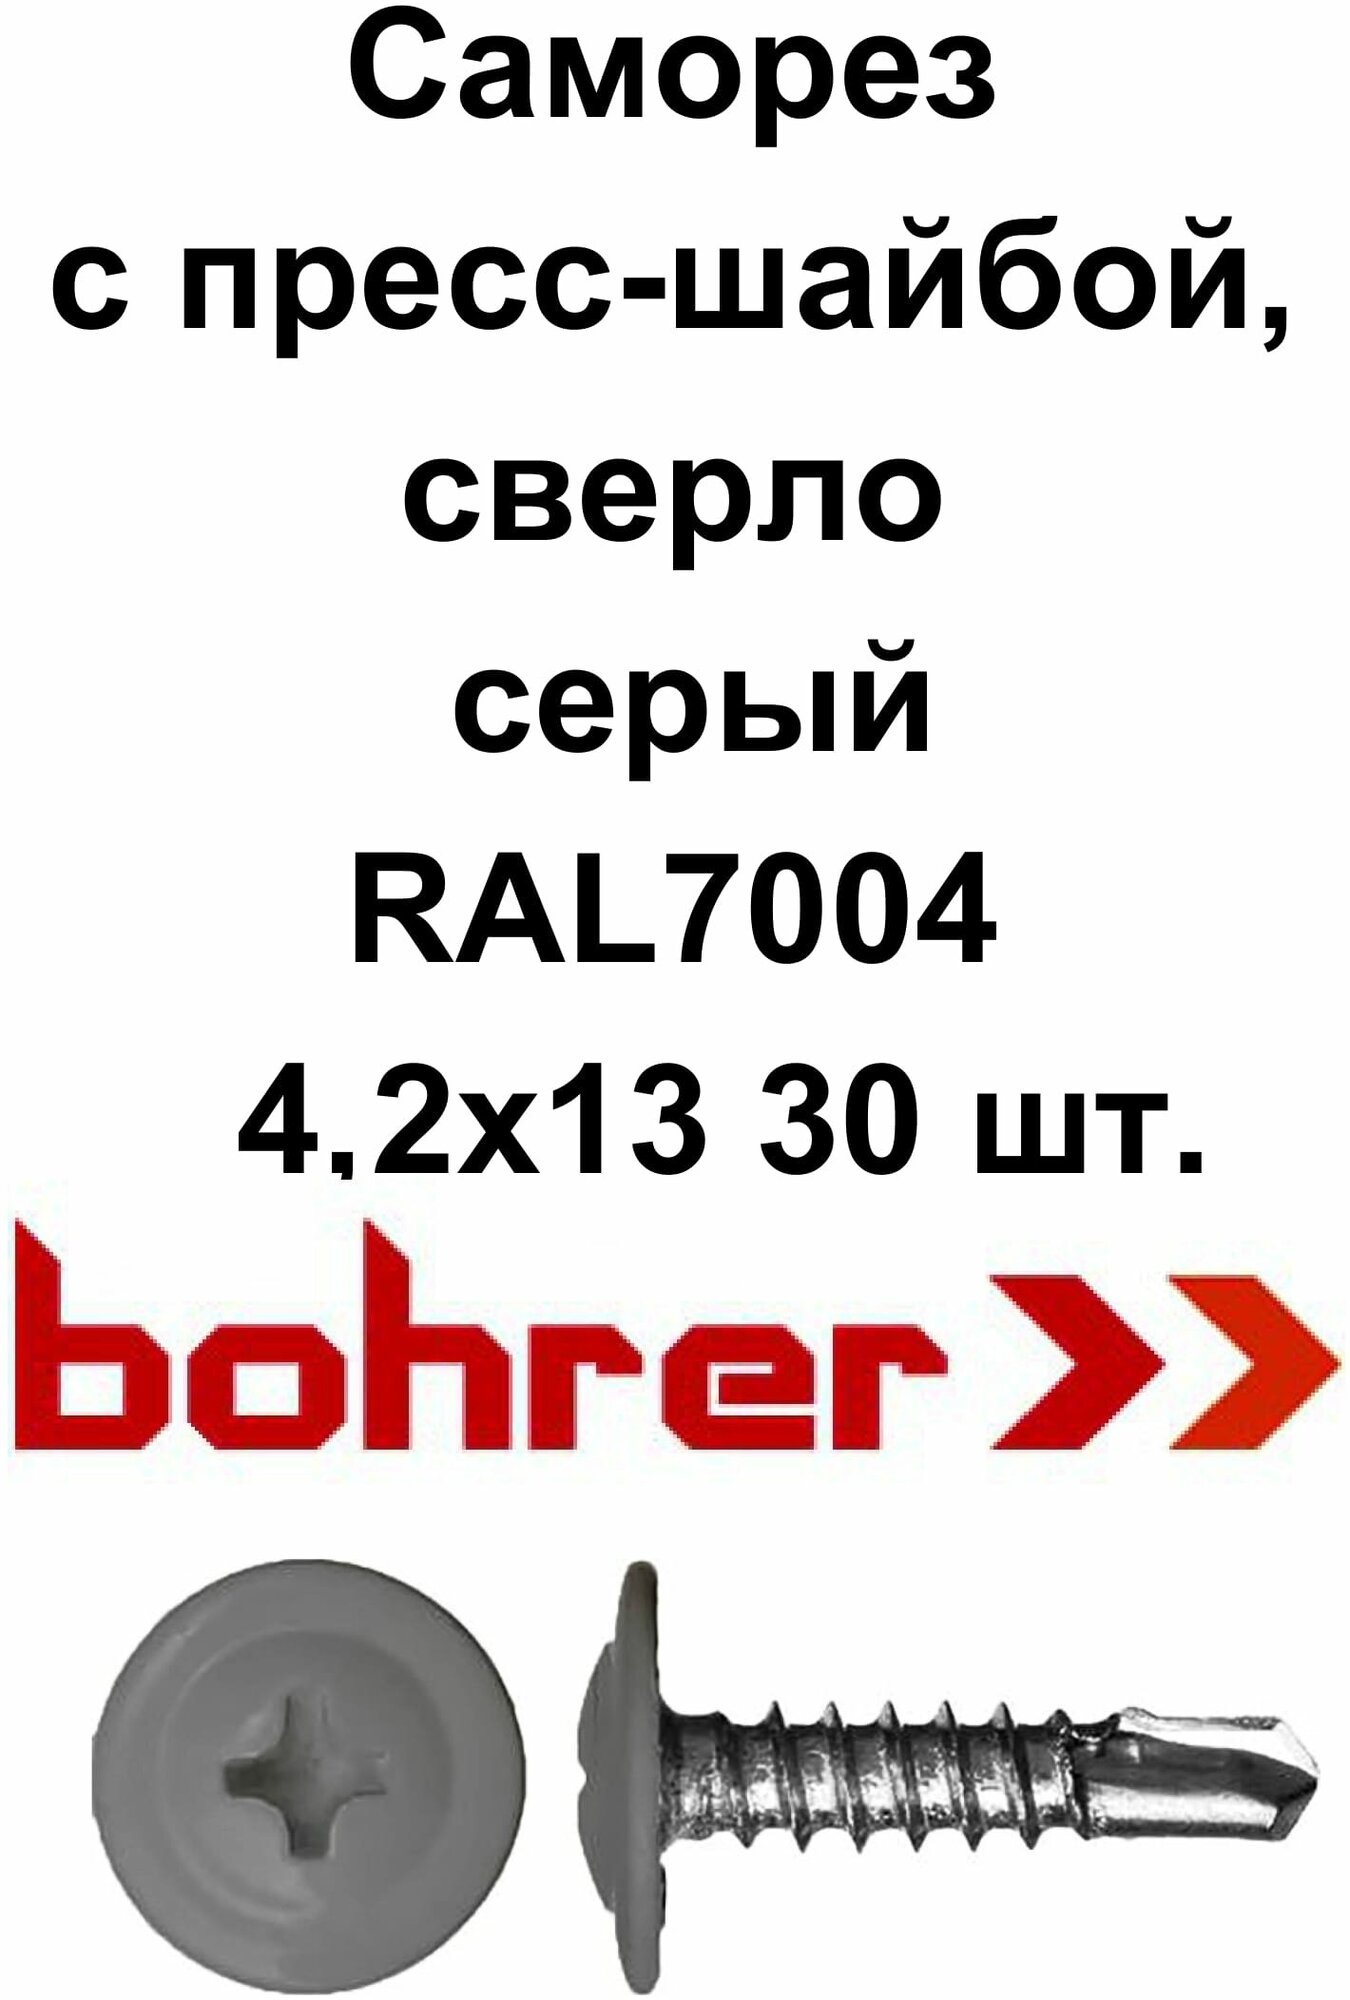 Саморез 42х13 RAL7004 серый по металлу полусфера с пресс-шайбой сверло (30 шт)